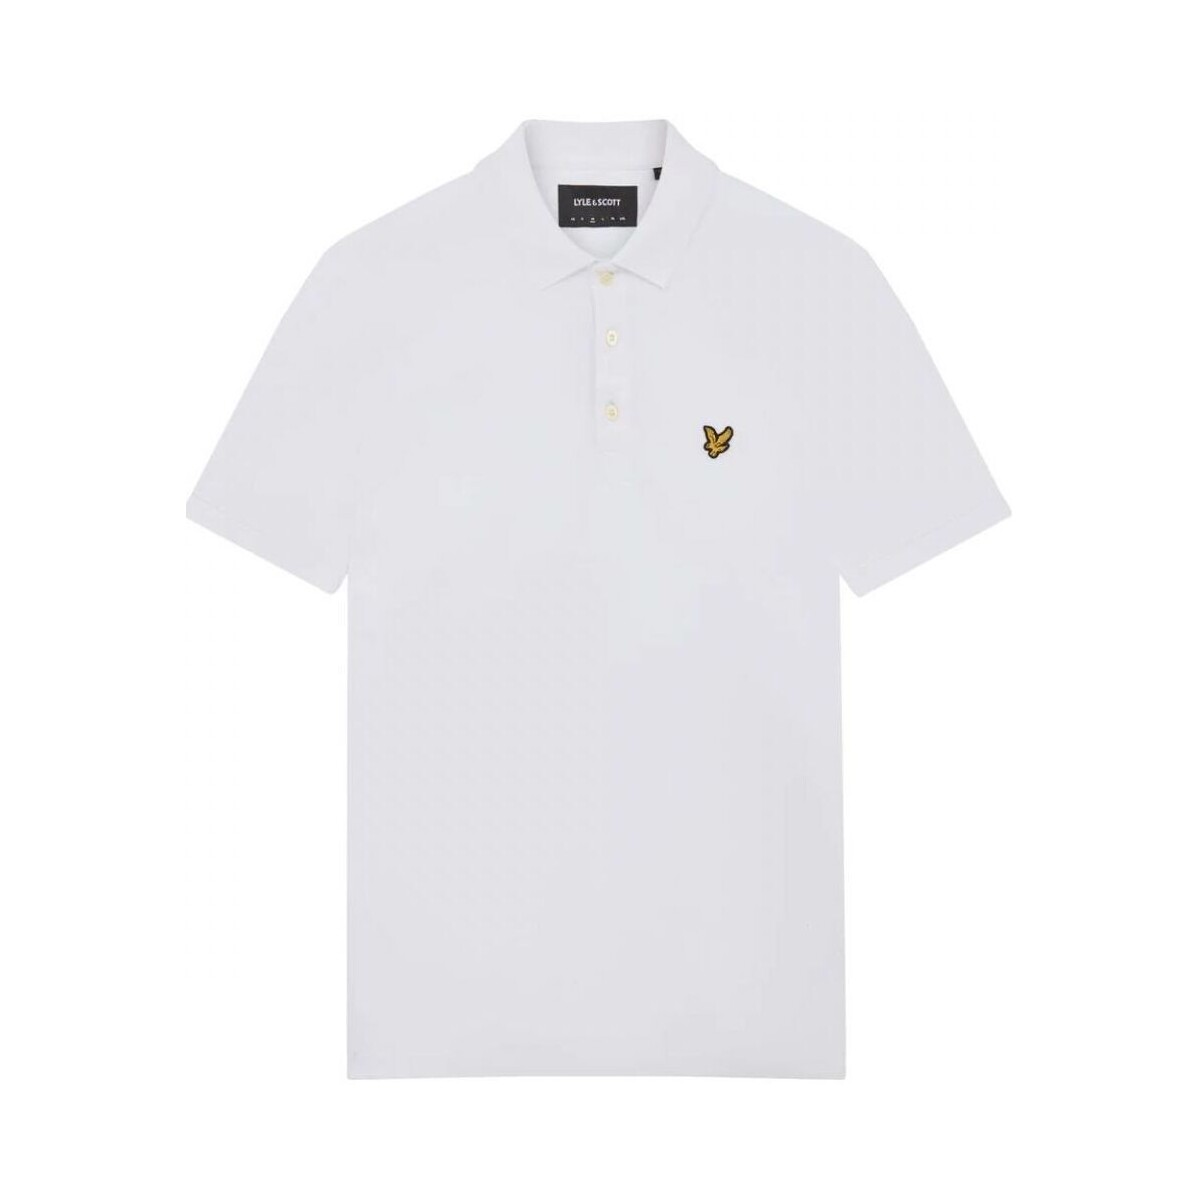 Kleidung Herren T-Shirts & Poloshirts Lyle & Scott SP400VOGX PLAIN SHIRT-626 WHITE Weiss